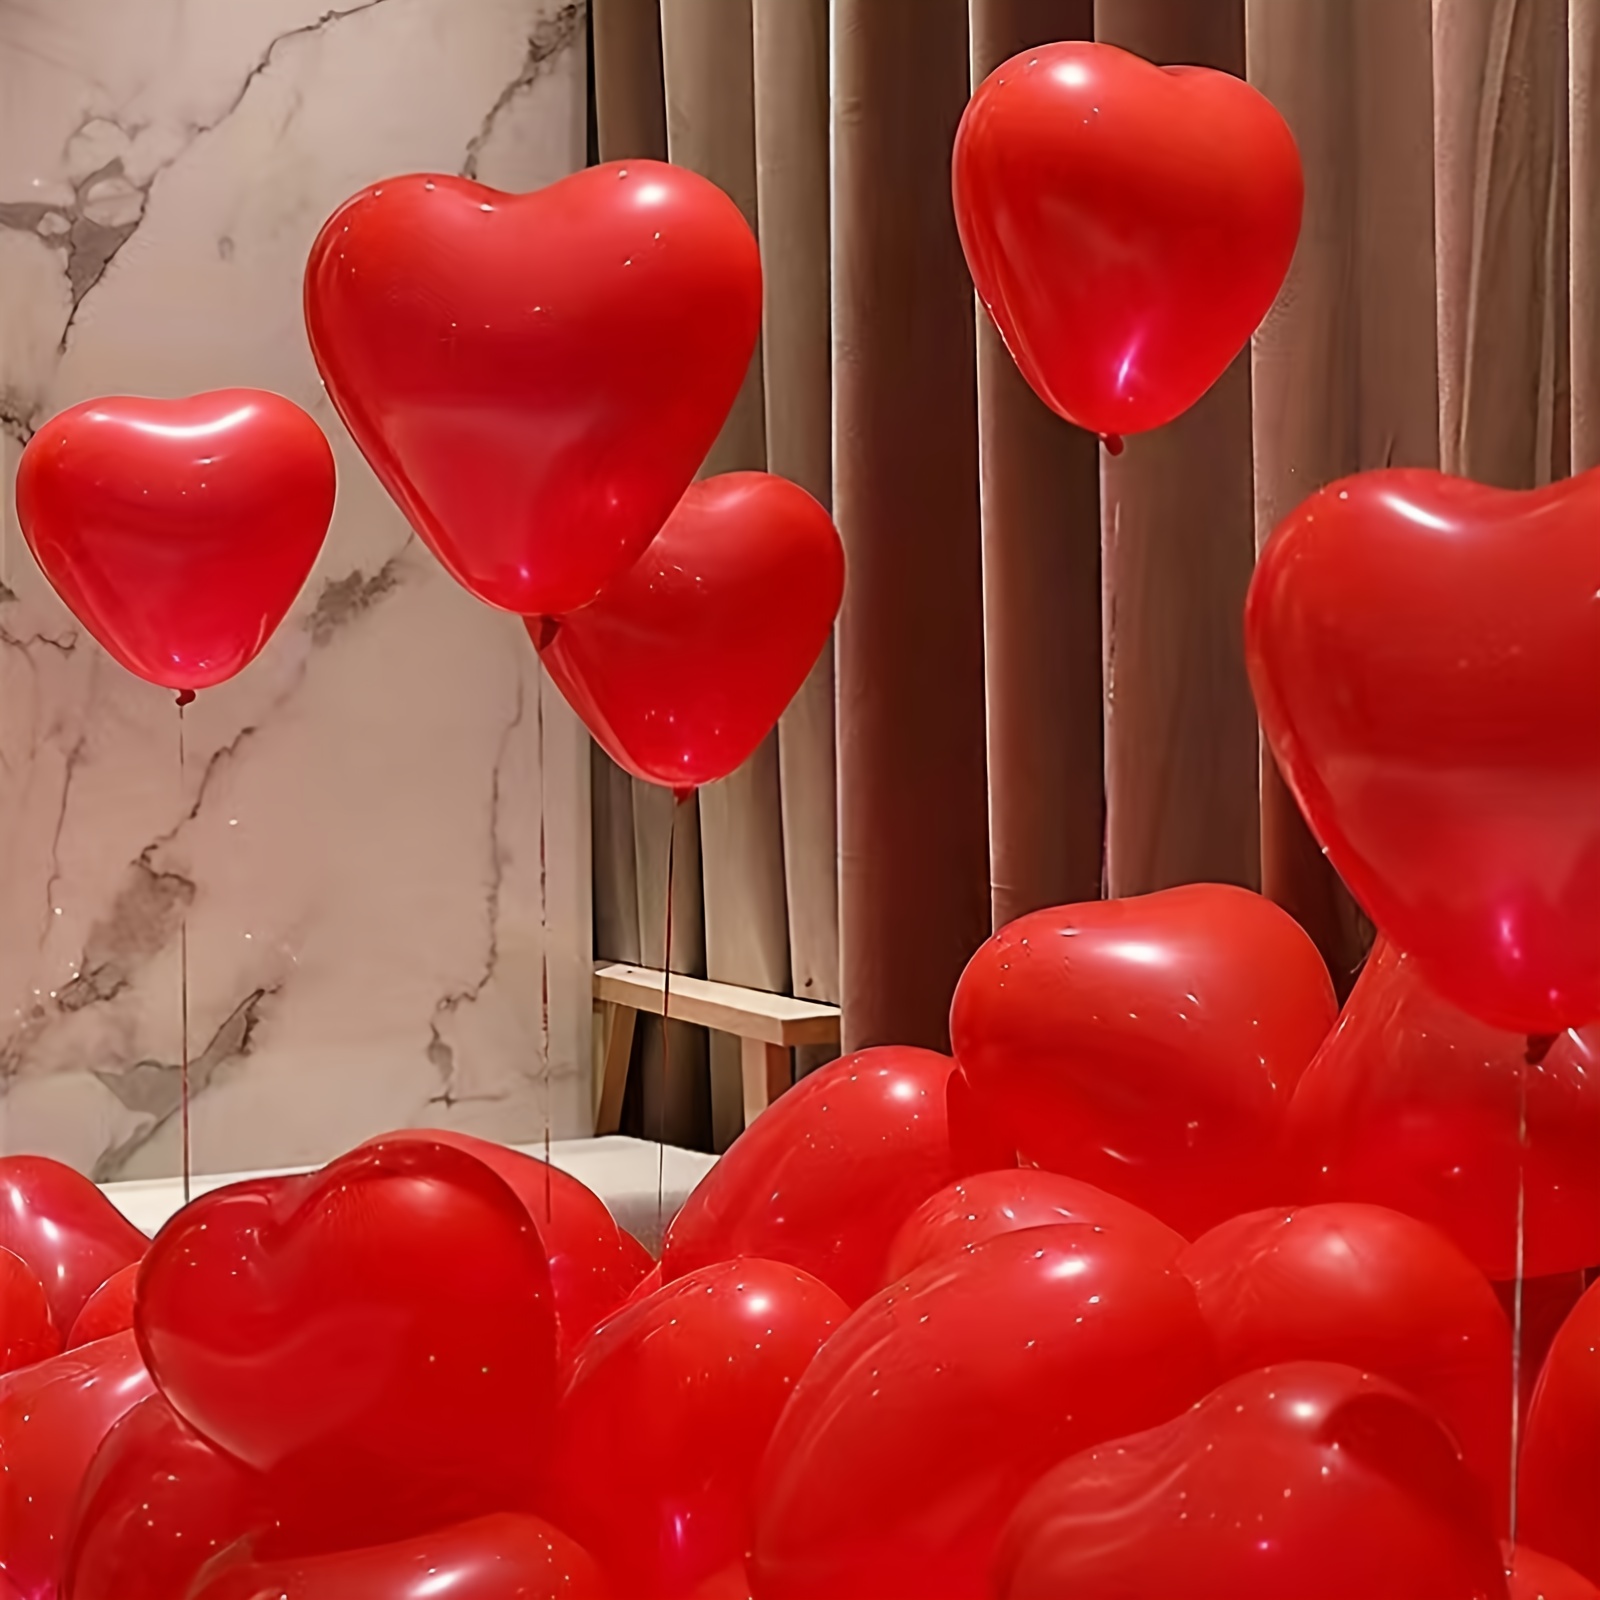 Palloncini a Forma di Cuore Rosa, Rosso e con Coriandoli - Decorazione  Amore per Camera, Casa, San Valentino